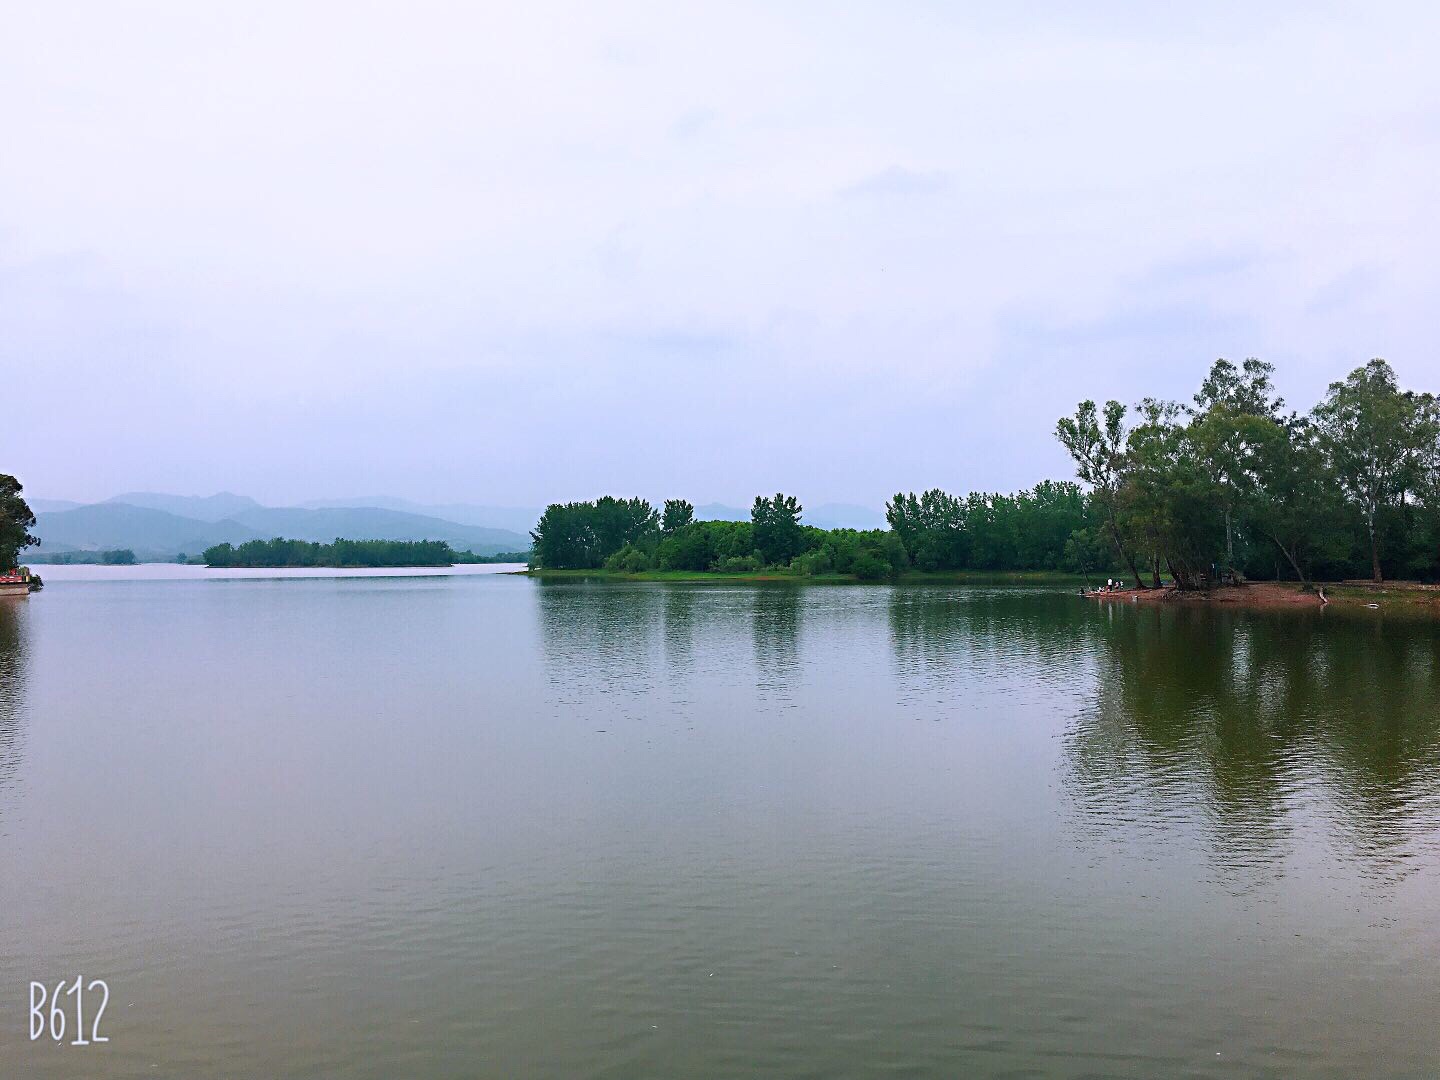 【携程攻略】简阳三岔湖风景区景点,川味丰富浓烈、地道、香。开始很高兴、结局难料